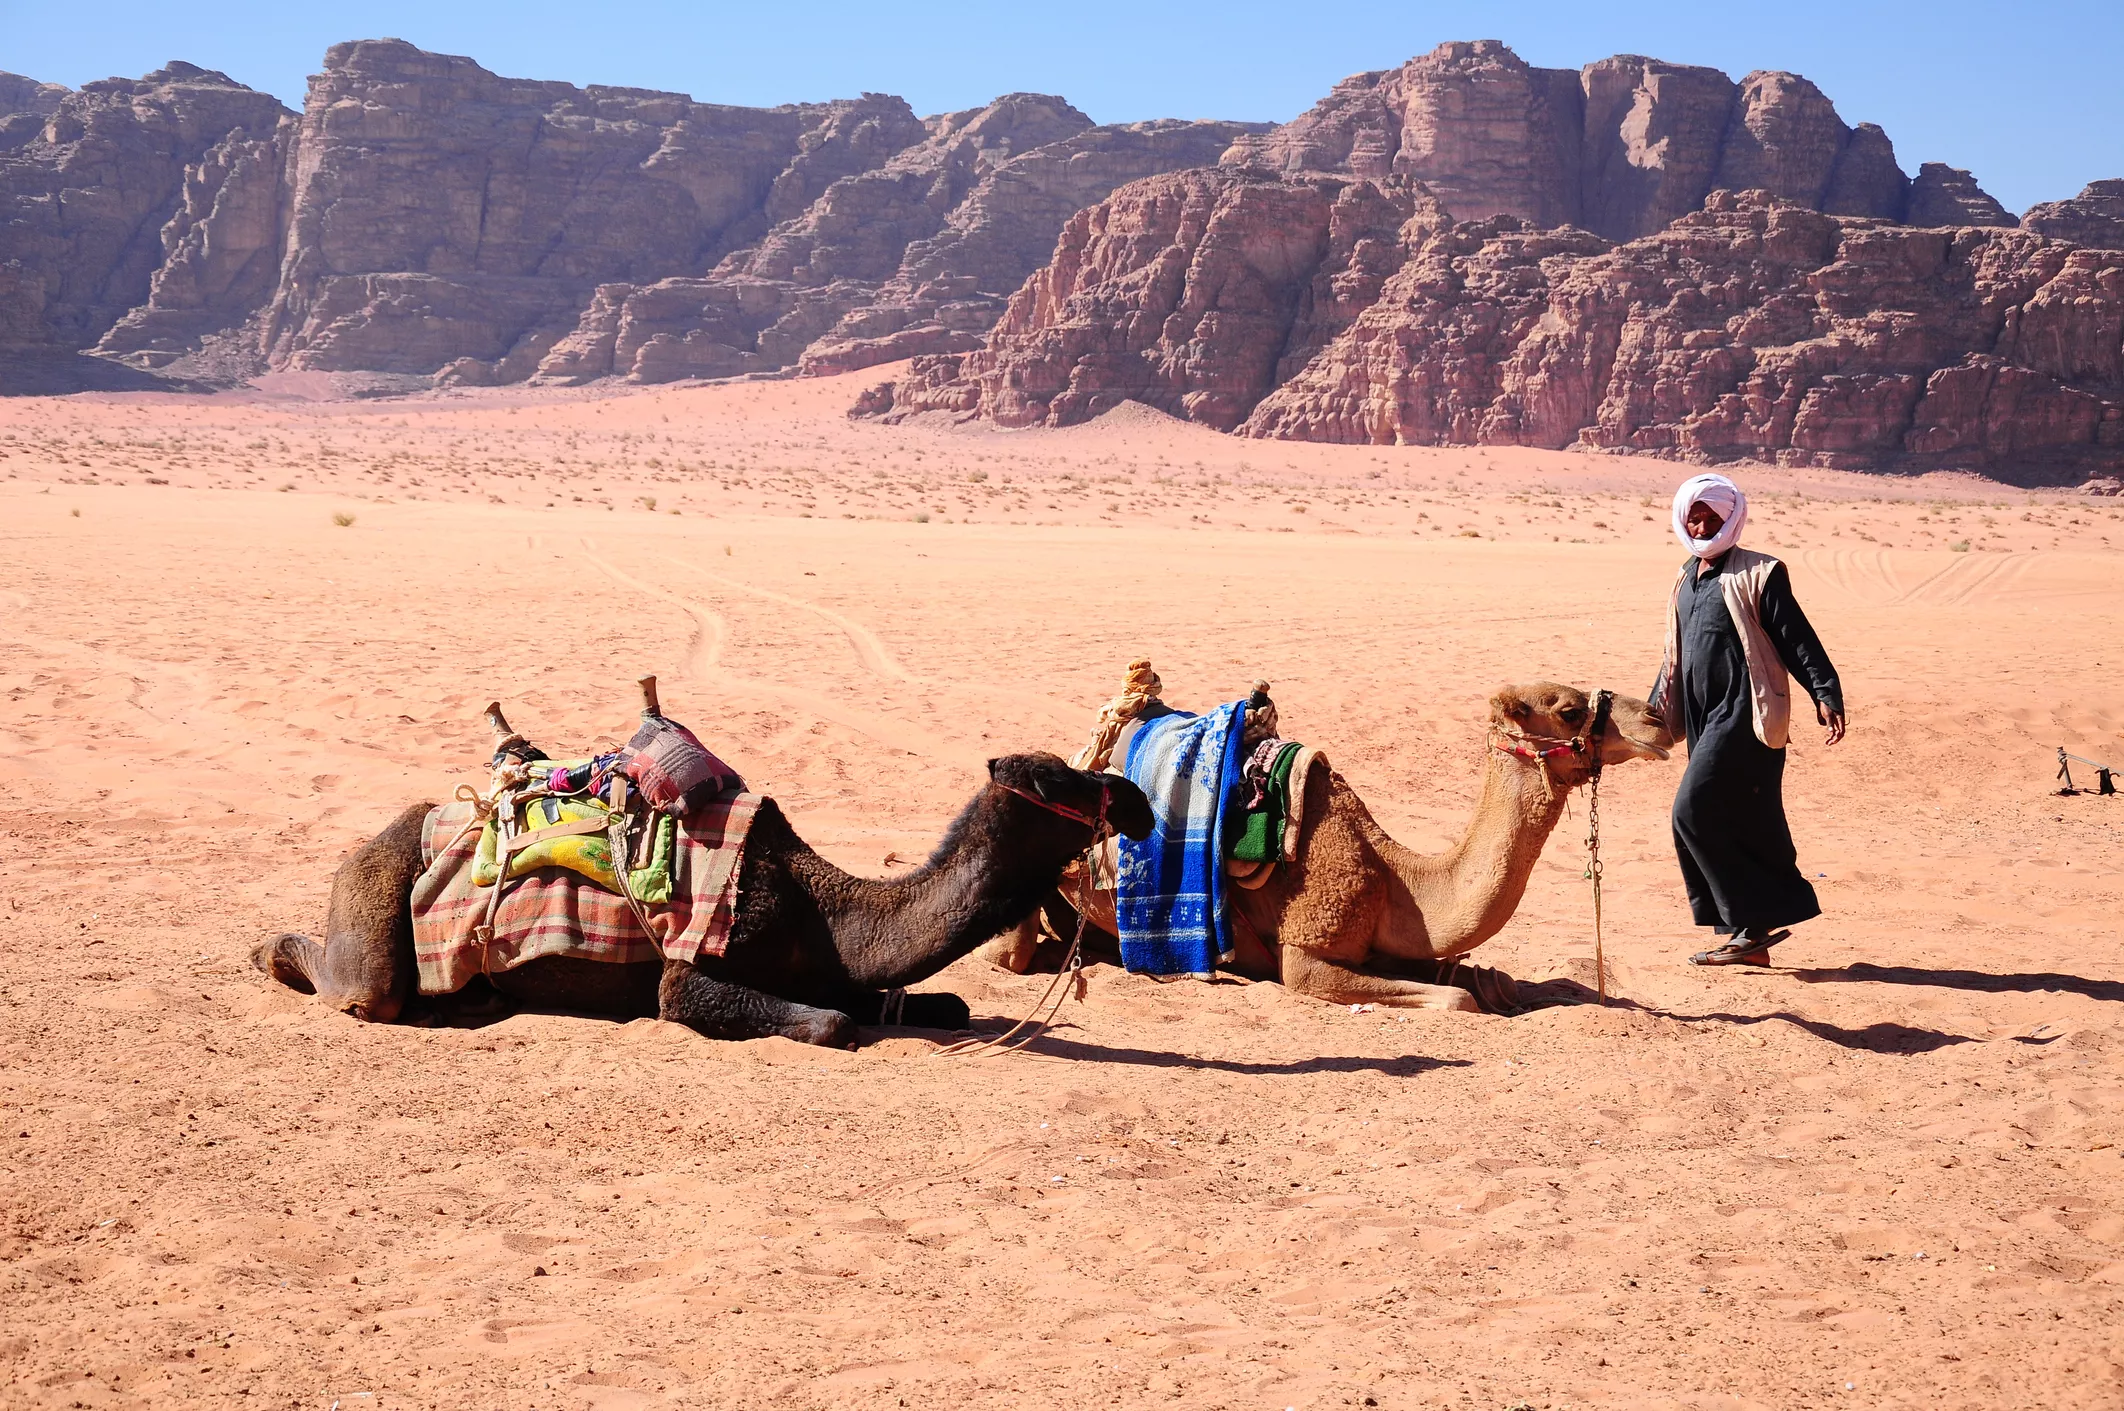 Les tribus nòmades del Sàhara oferien protecció militar i camells a les caravanes comercials de les tribus sedentàries que anaven des de Mali fins al Marroc